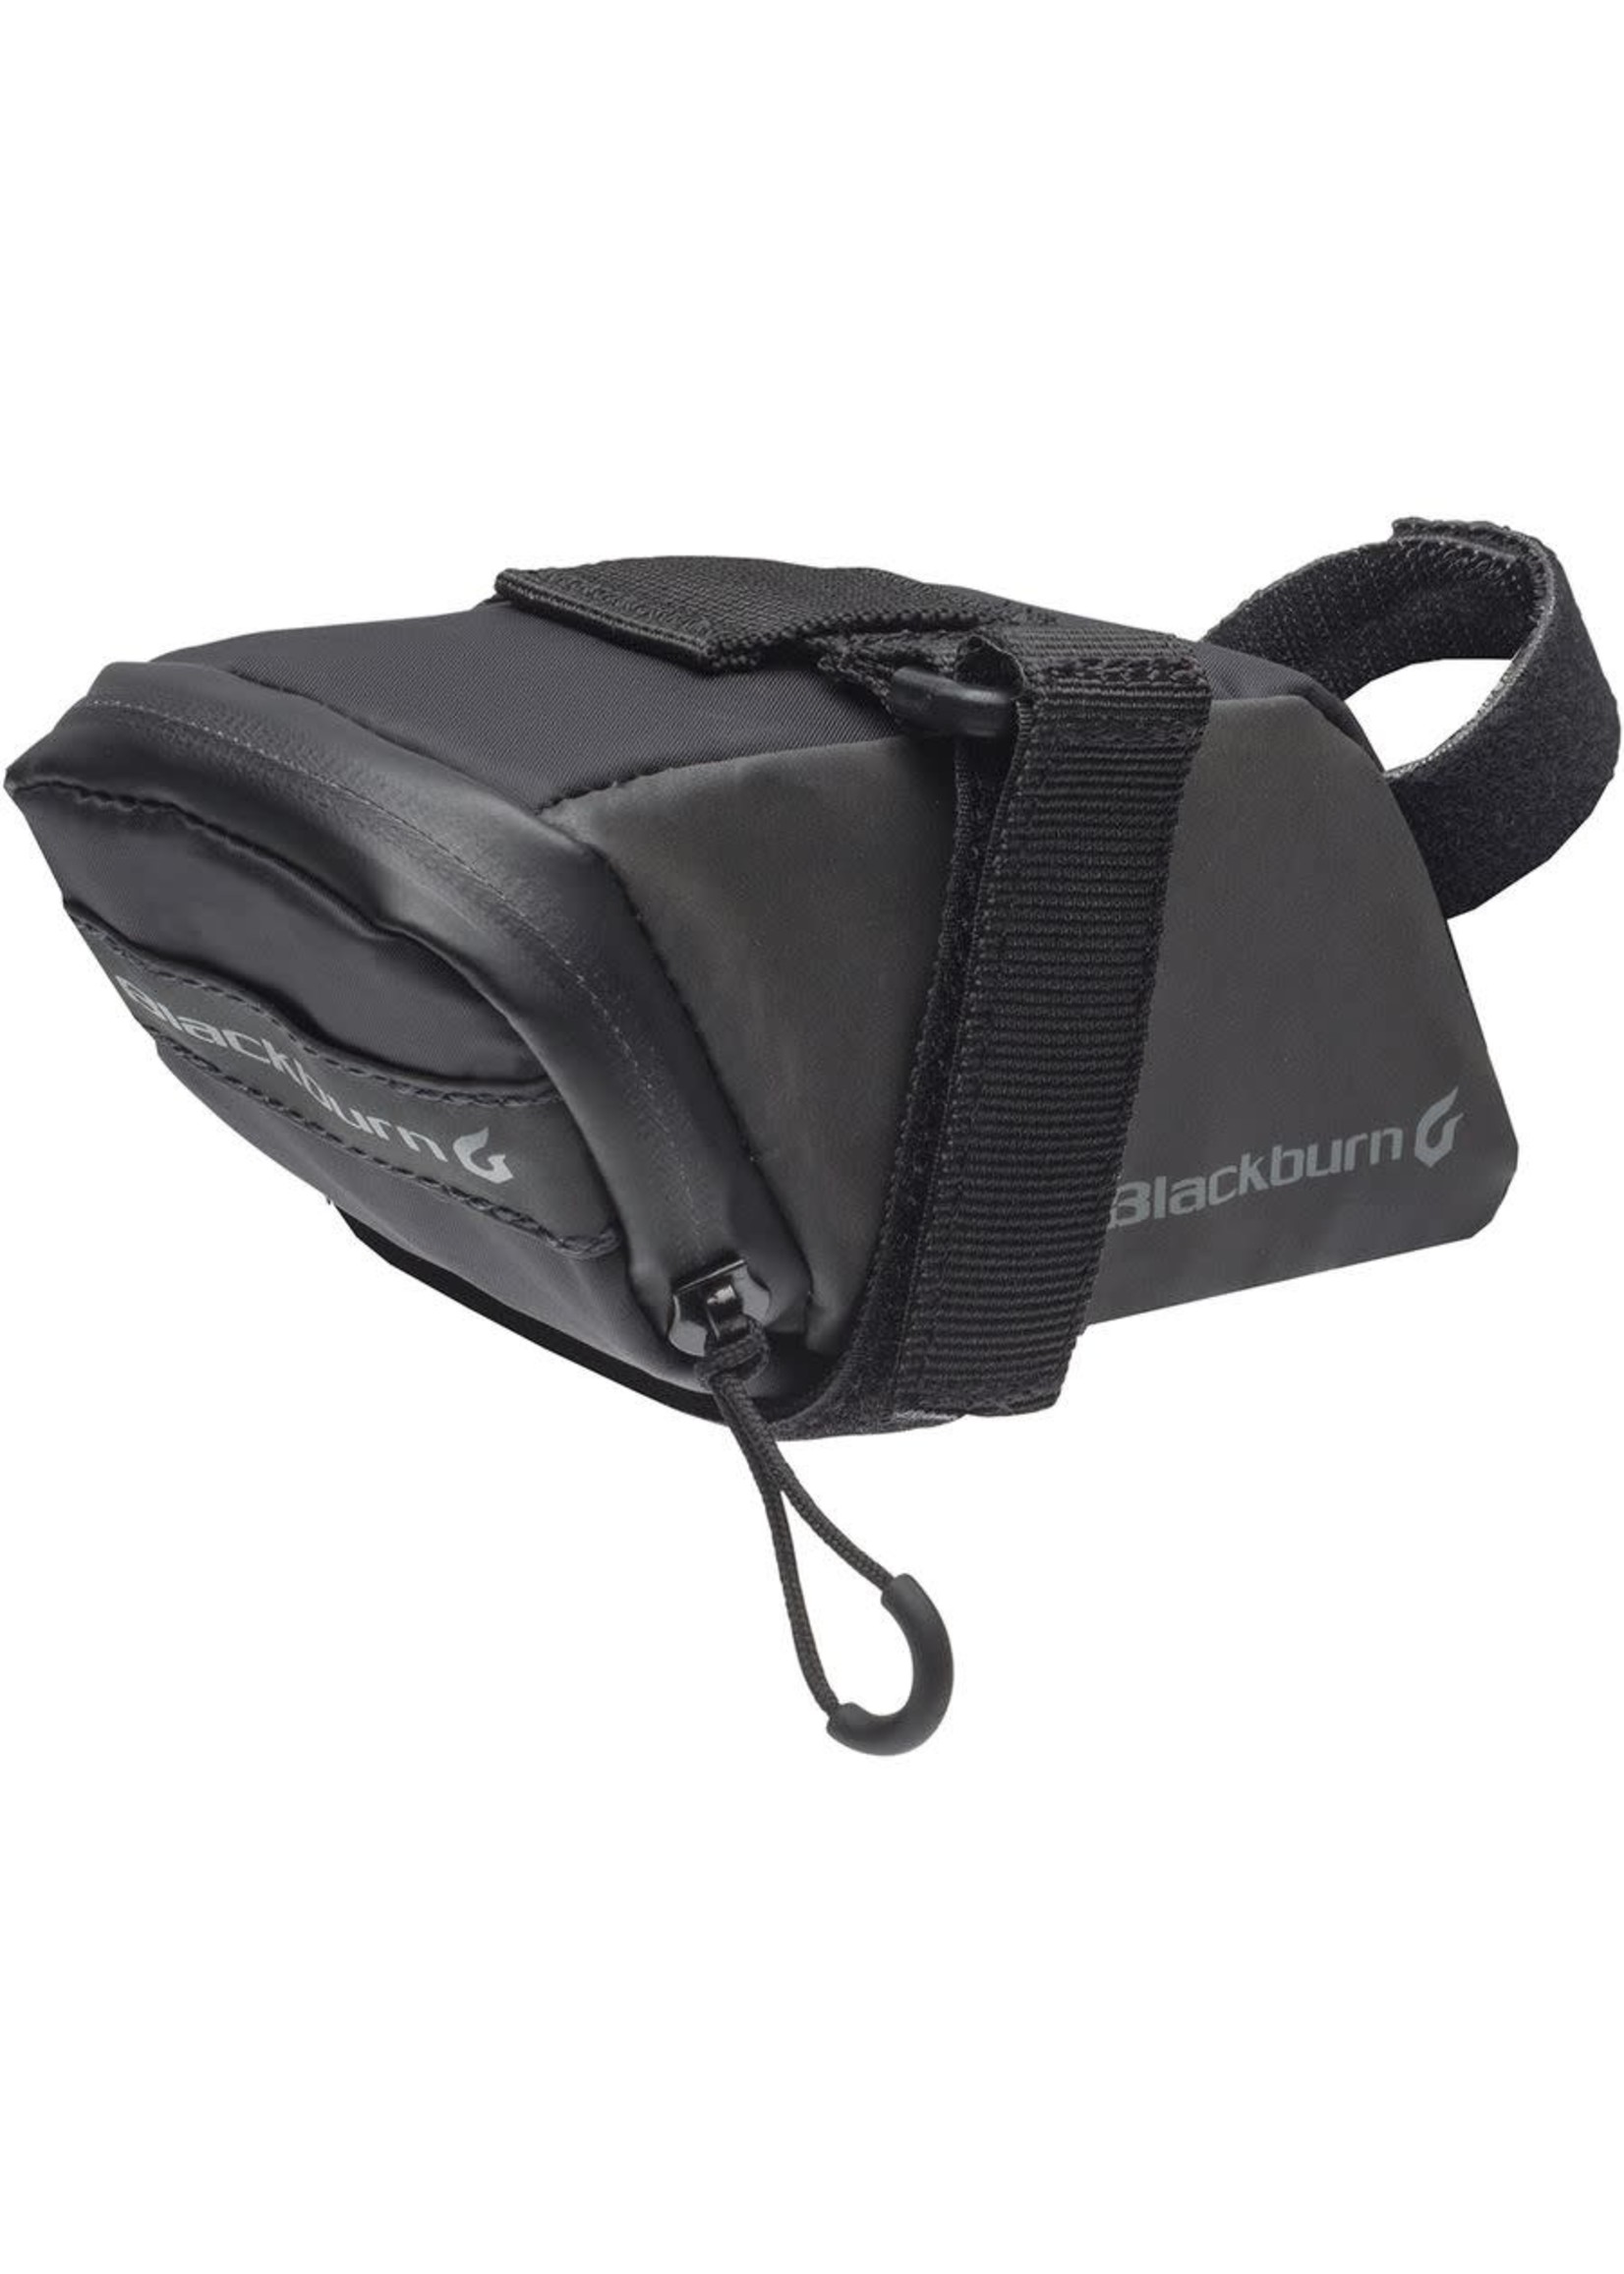 BLACKBURN GRID SEAT BAG - SMALL